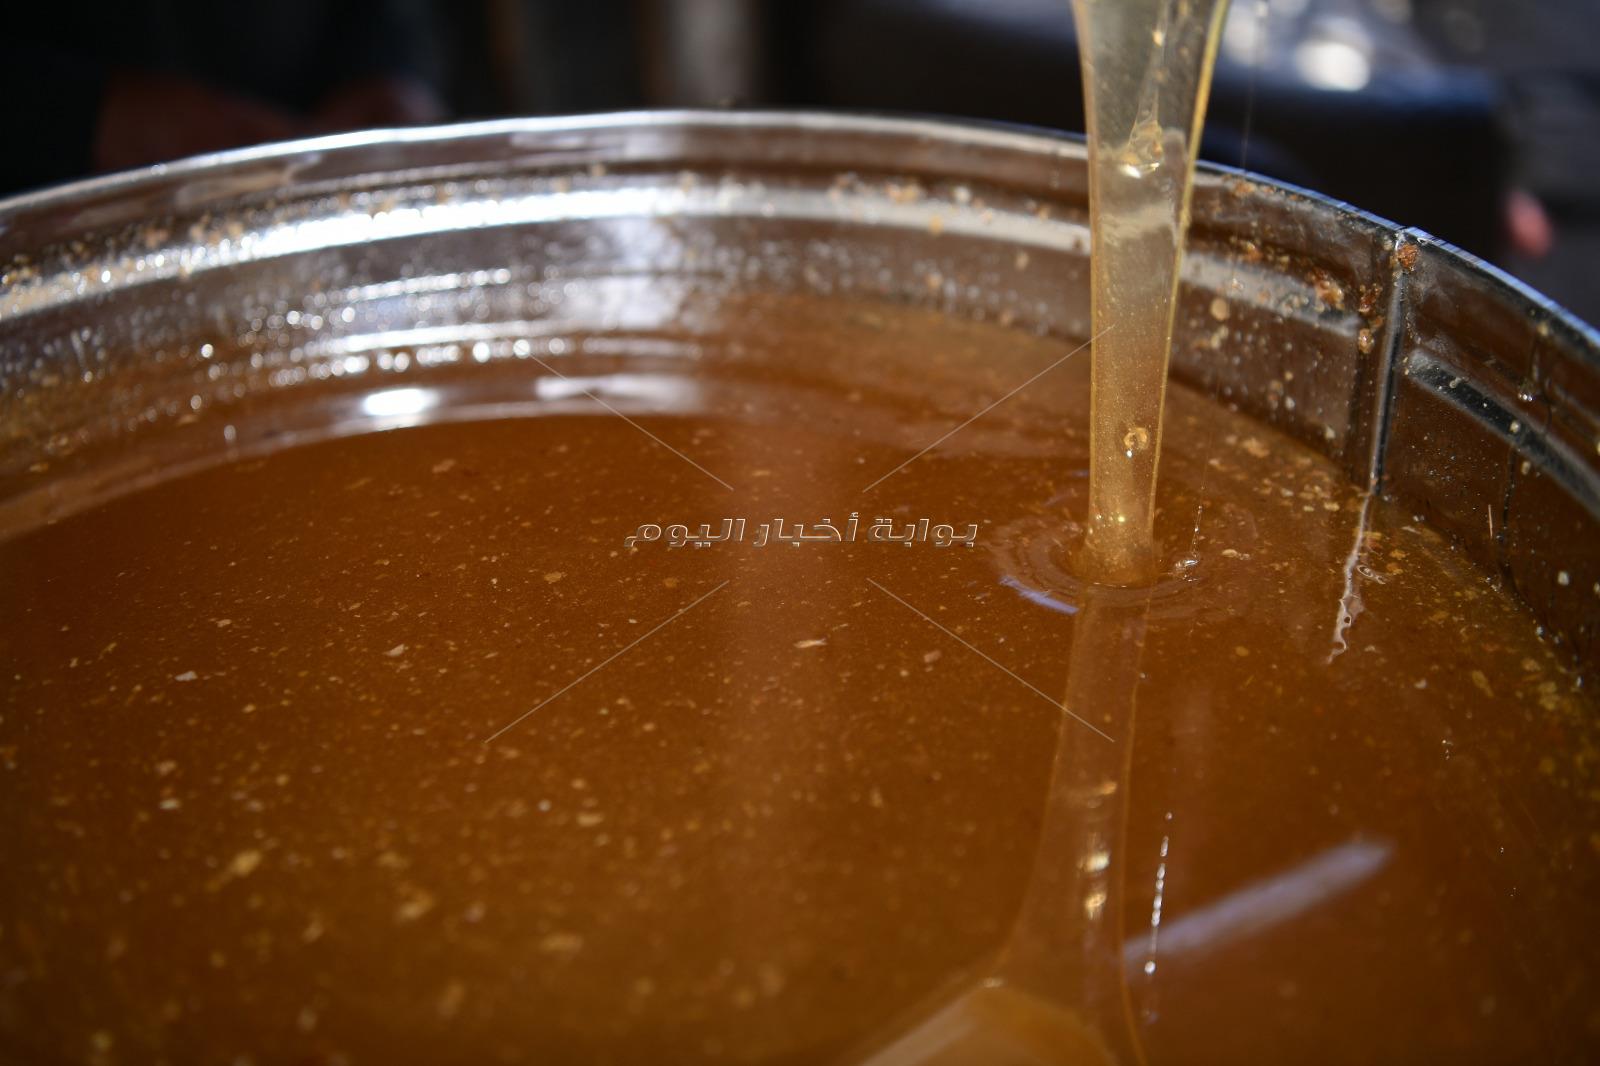 إنتاج أول قطفة عسل نحل طبيعي بمشروعات الأمن الغذائي في قنا